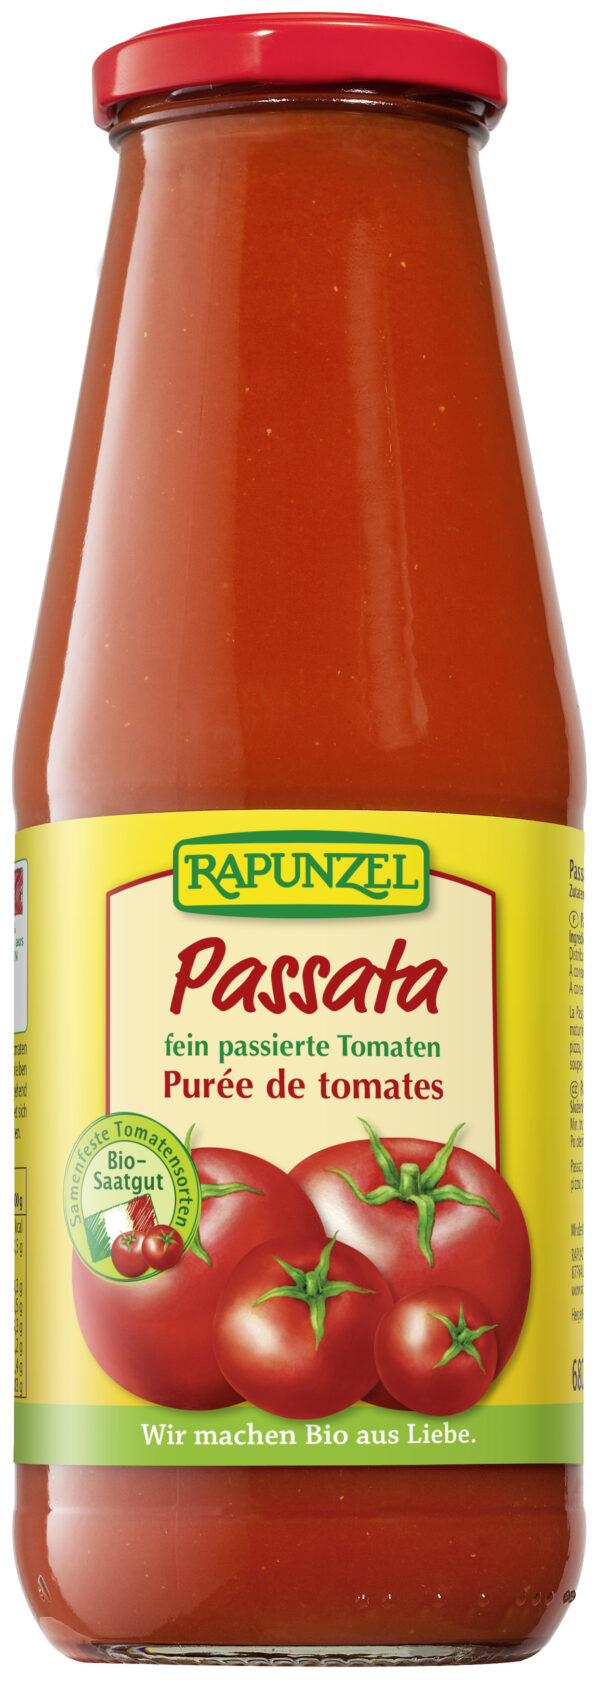 Rapunzel Tomaten-Passata 680g